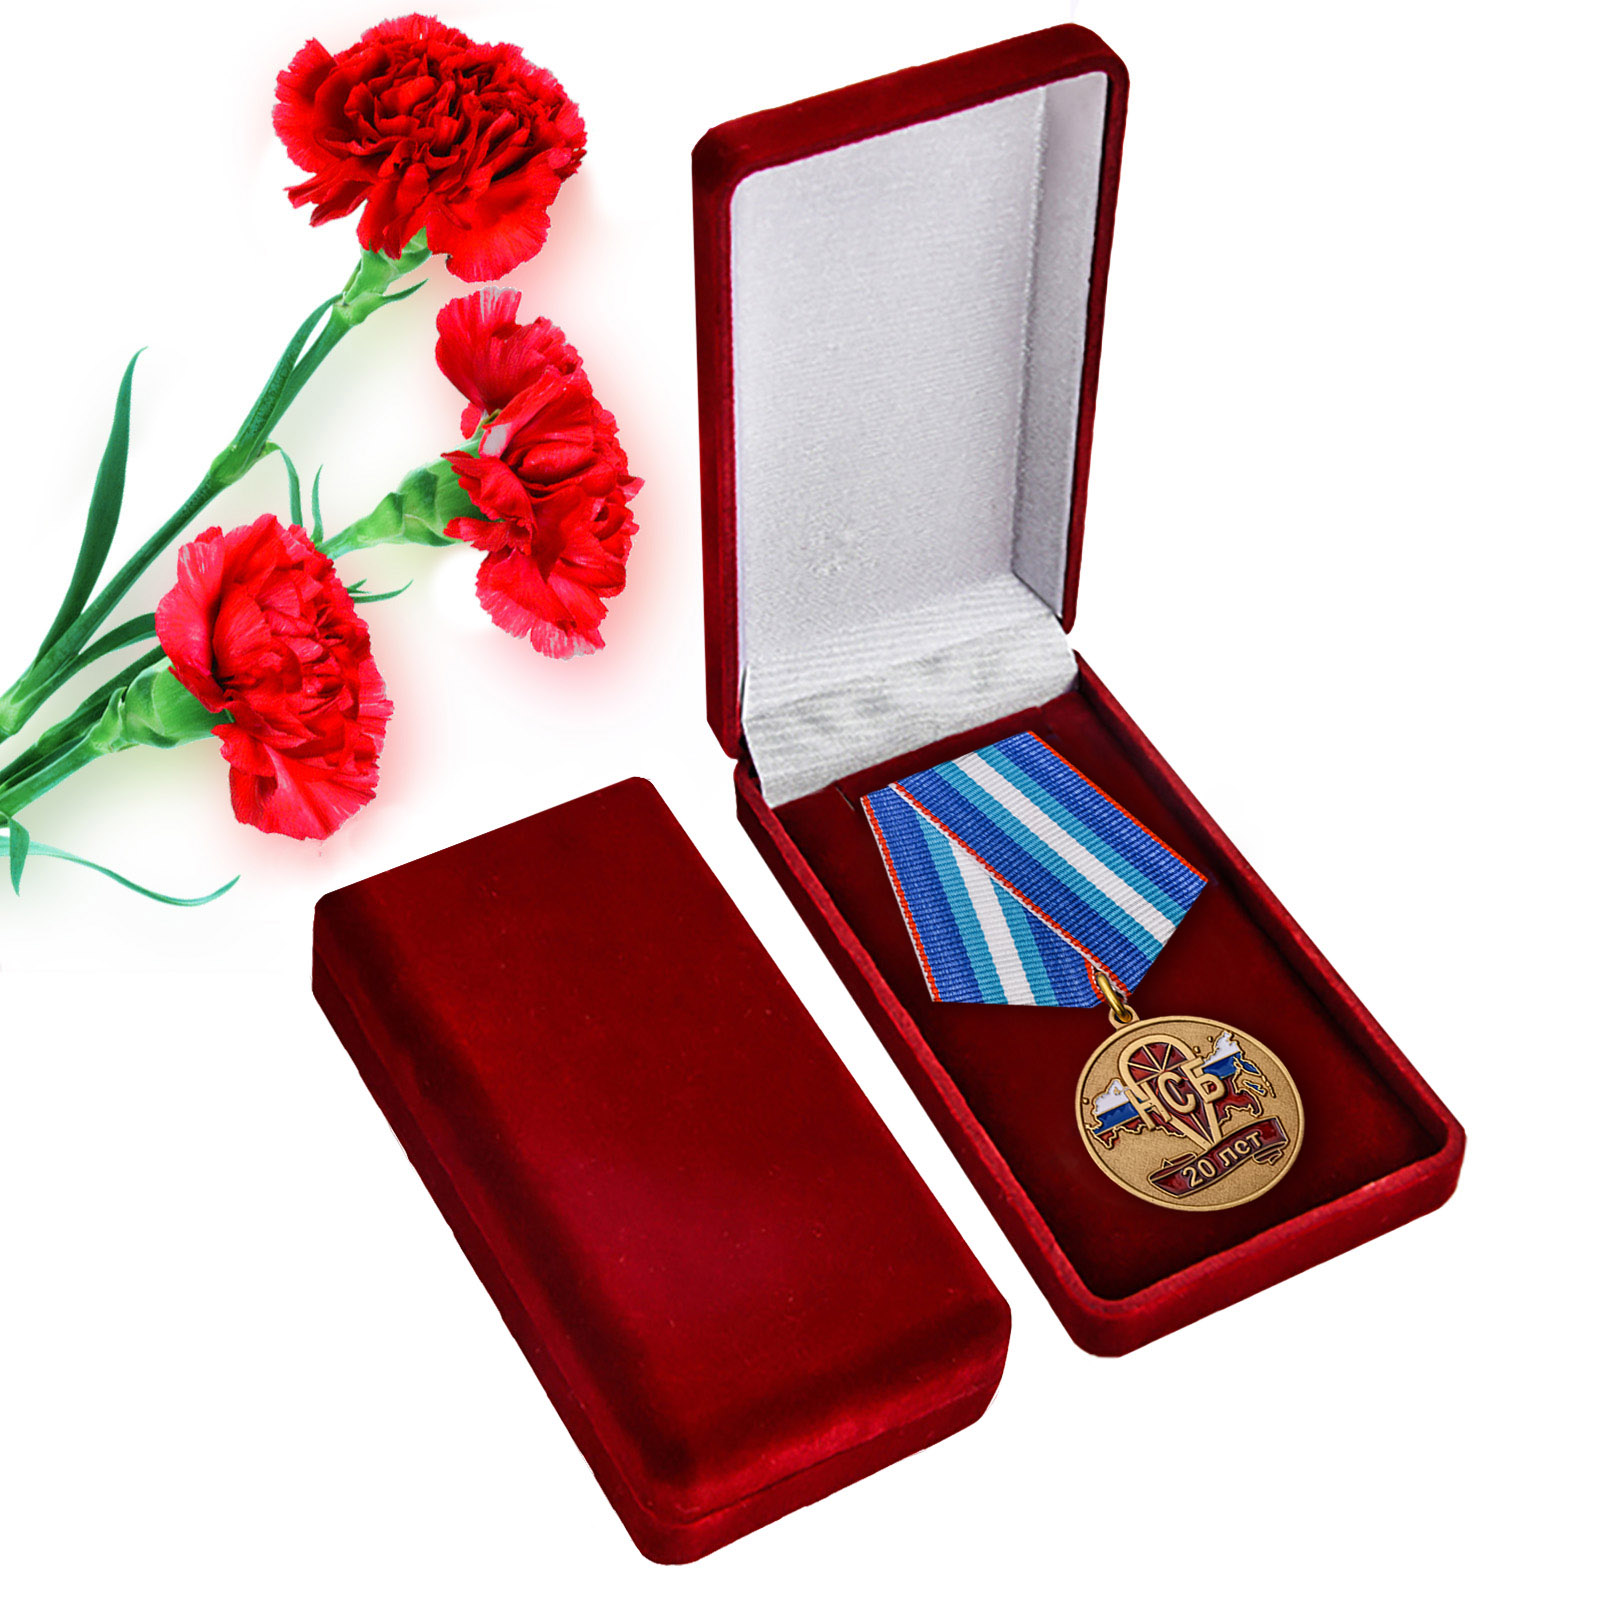 Купить памятную медаль 20 лет НСБ Негосударственная сфера безопасности по низкой цене